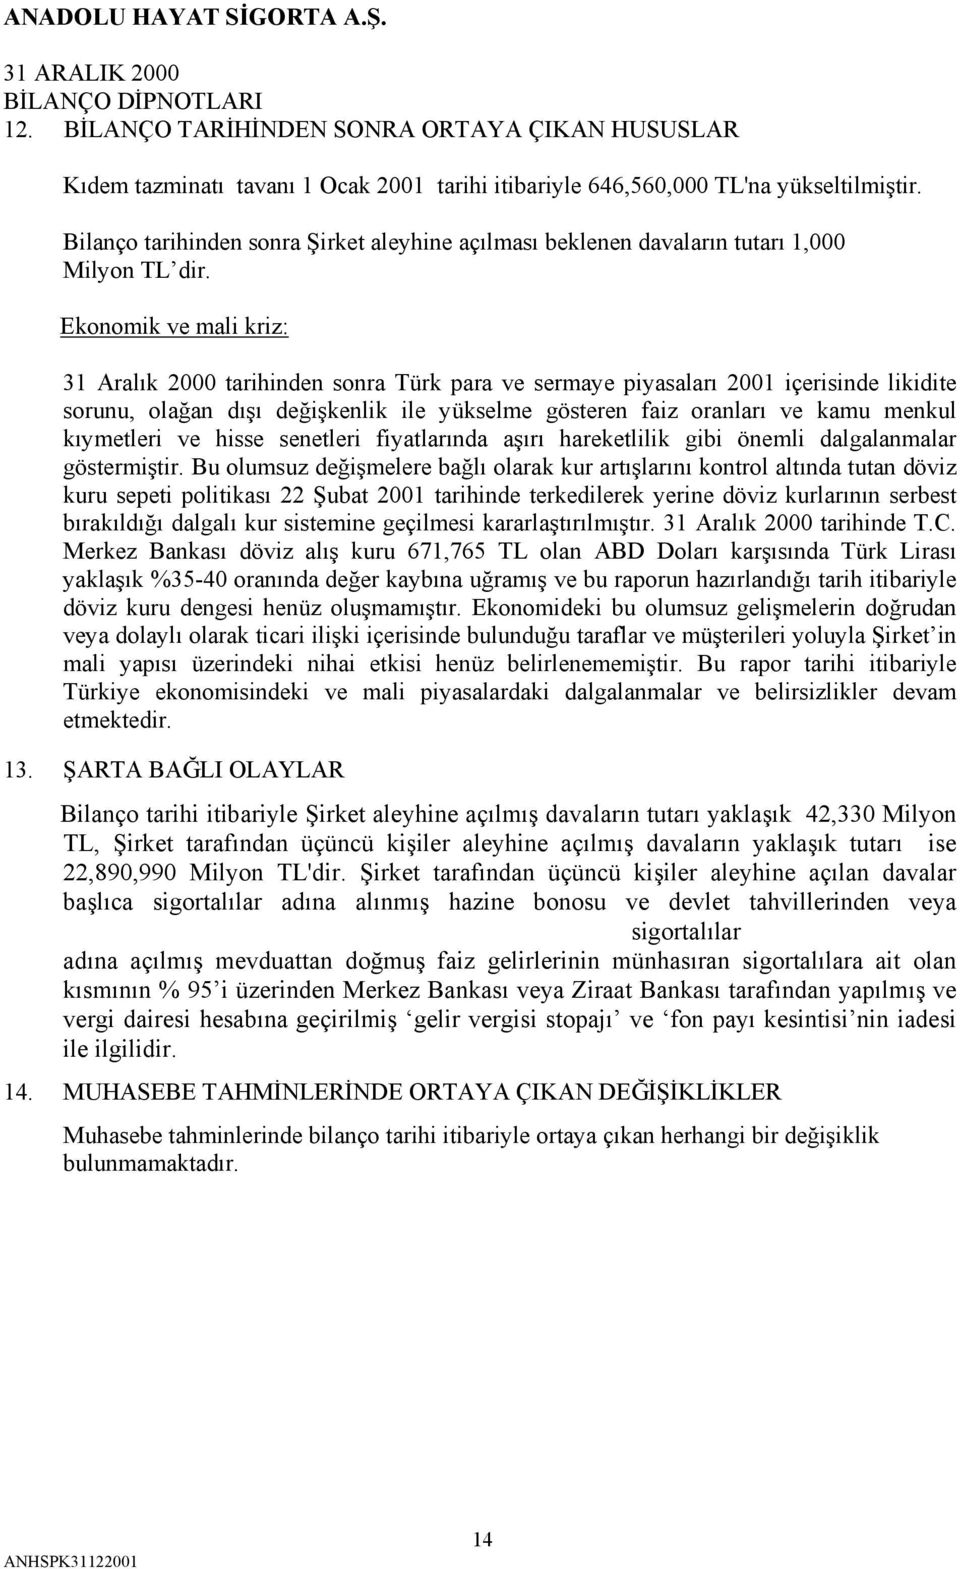 Ekonomik ve mali kriz: 31 Aralık 2000 tarihinden sonra Türk para ve sermaye piyasaları 2001 içerisinde likidite sorunu, olağan dışı değişkenlik ile yükselme gösteren faiz oranları ve kamu menkul